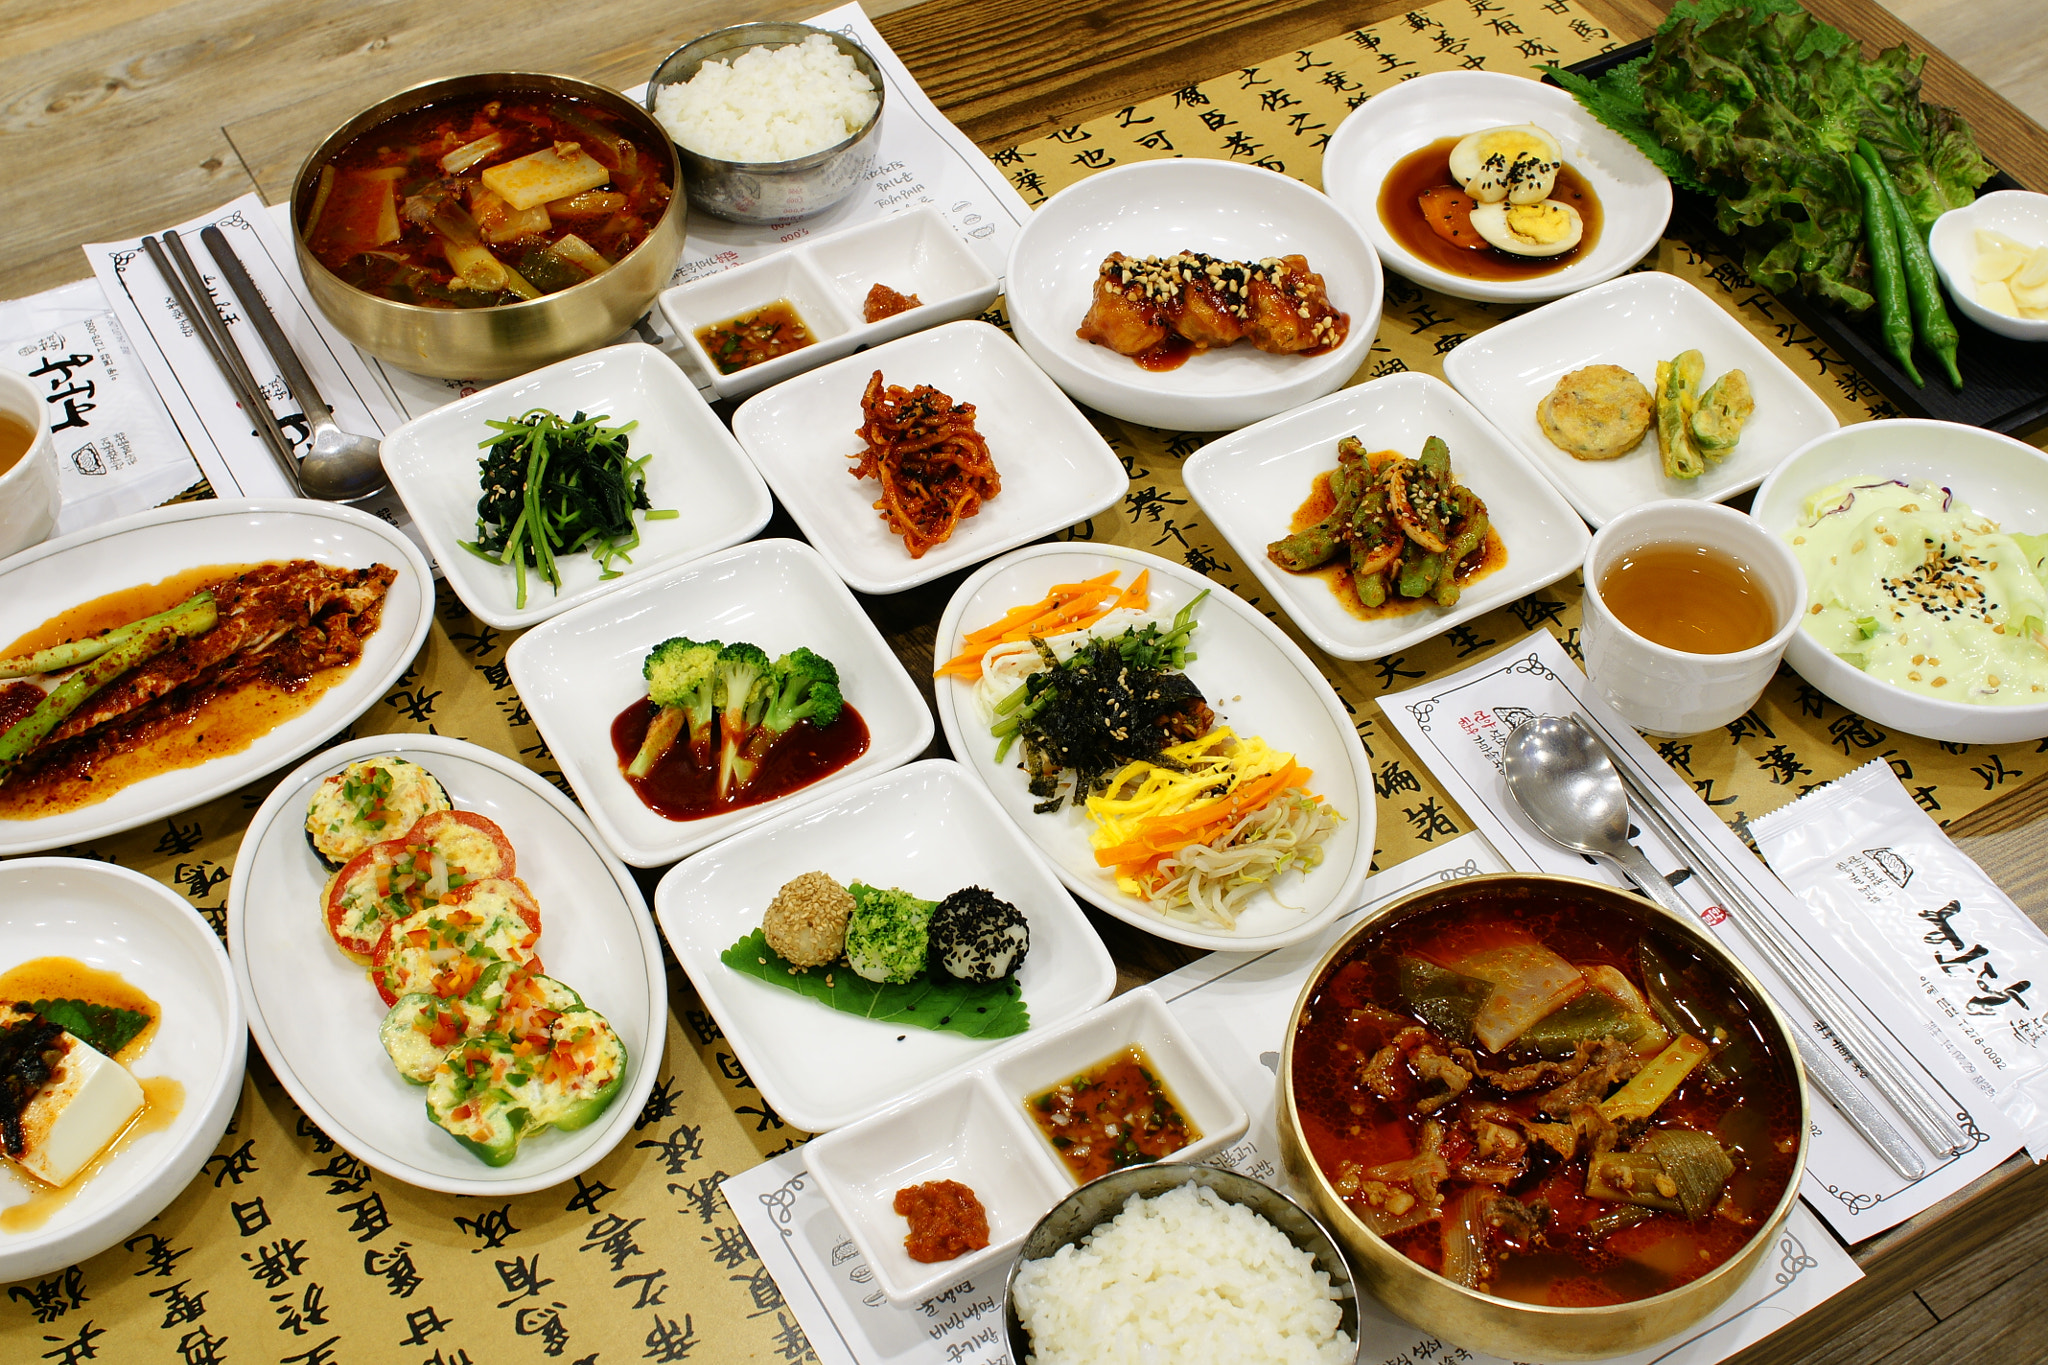 Sony Alpha DSLR-A700 sample photo. Korean food photography